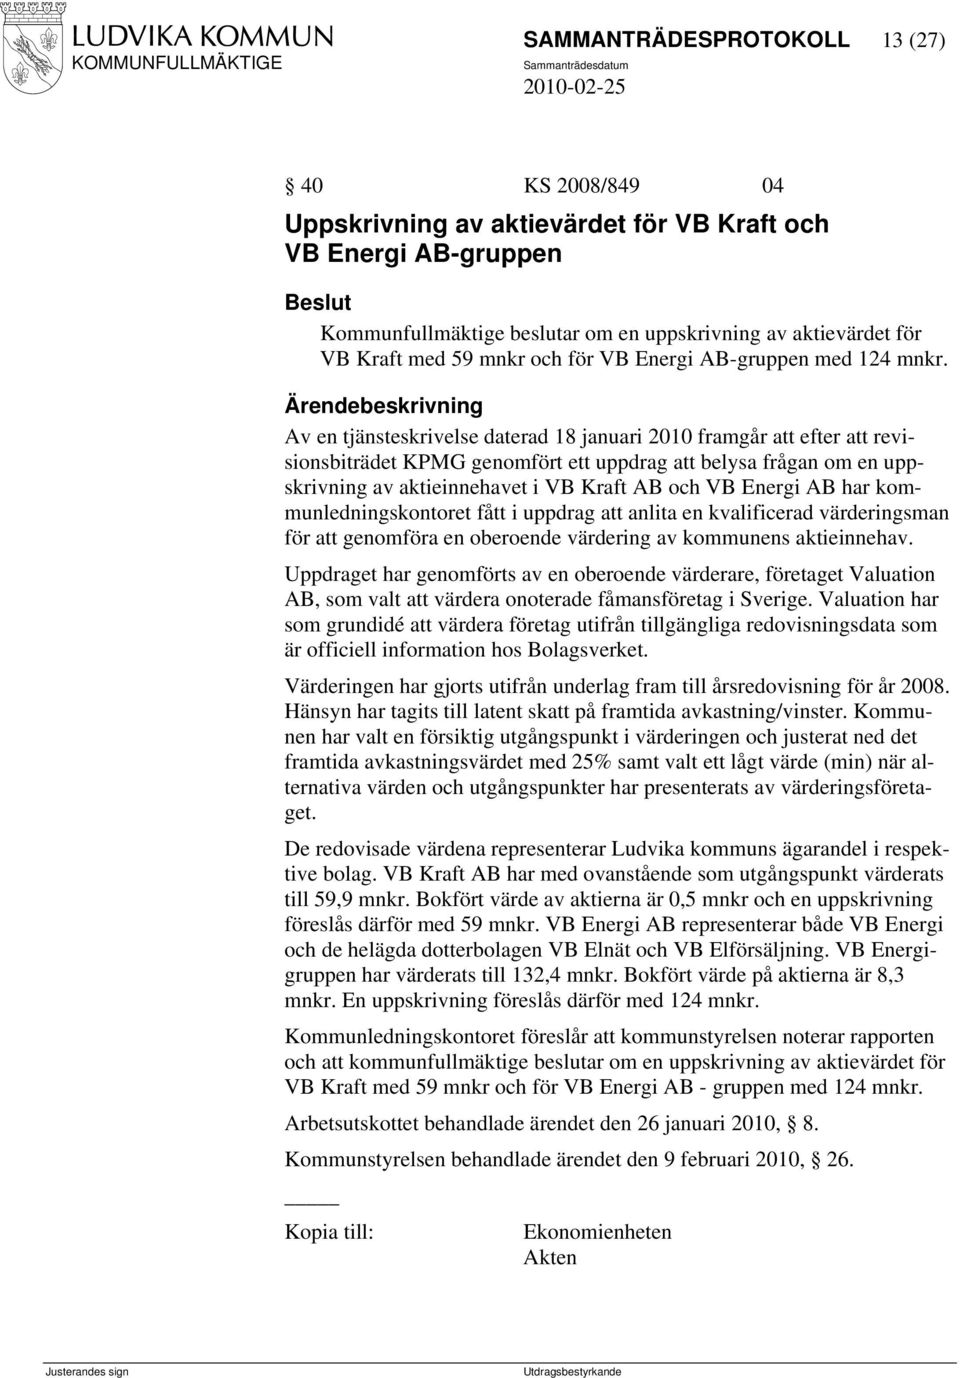 Av en tjänsteskrivelse daterad 18 januari 2010 framgår att efter att revisionsbiträdet KPMG genomfört ett uppdrag att belysa frågan om en uppskrivning av aktieinnehavet i VB Kraft AB och VB Energi AB